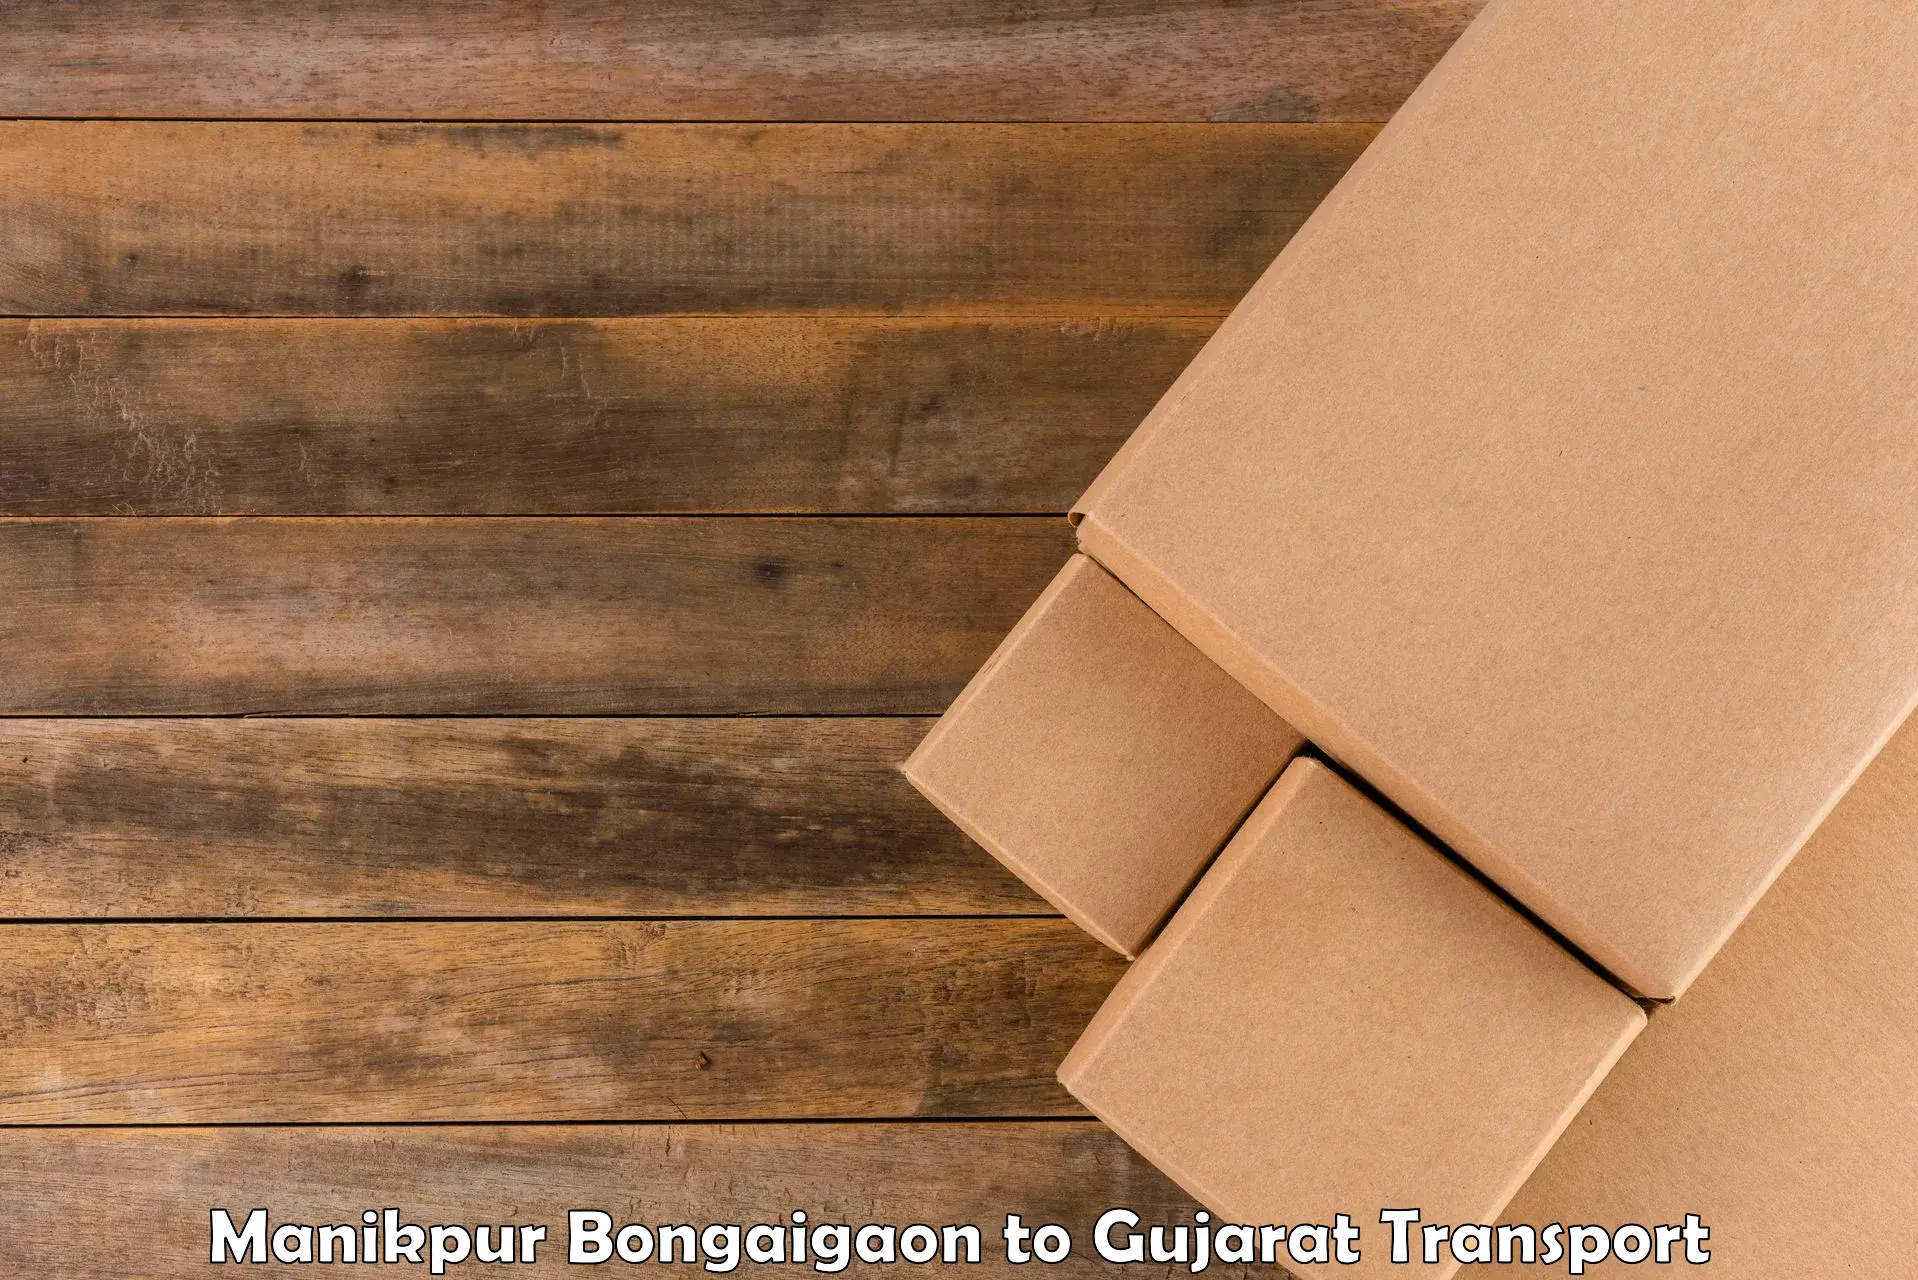 Lorry transport service Manikpur Bongaigaon to Gujarat